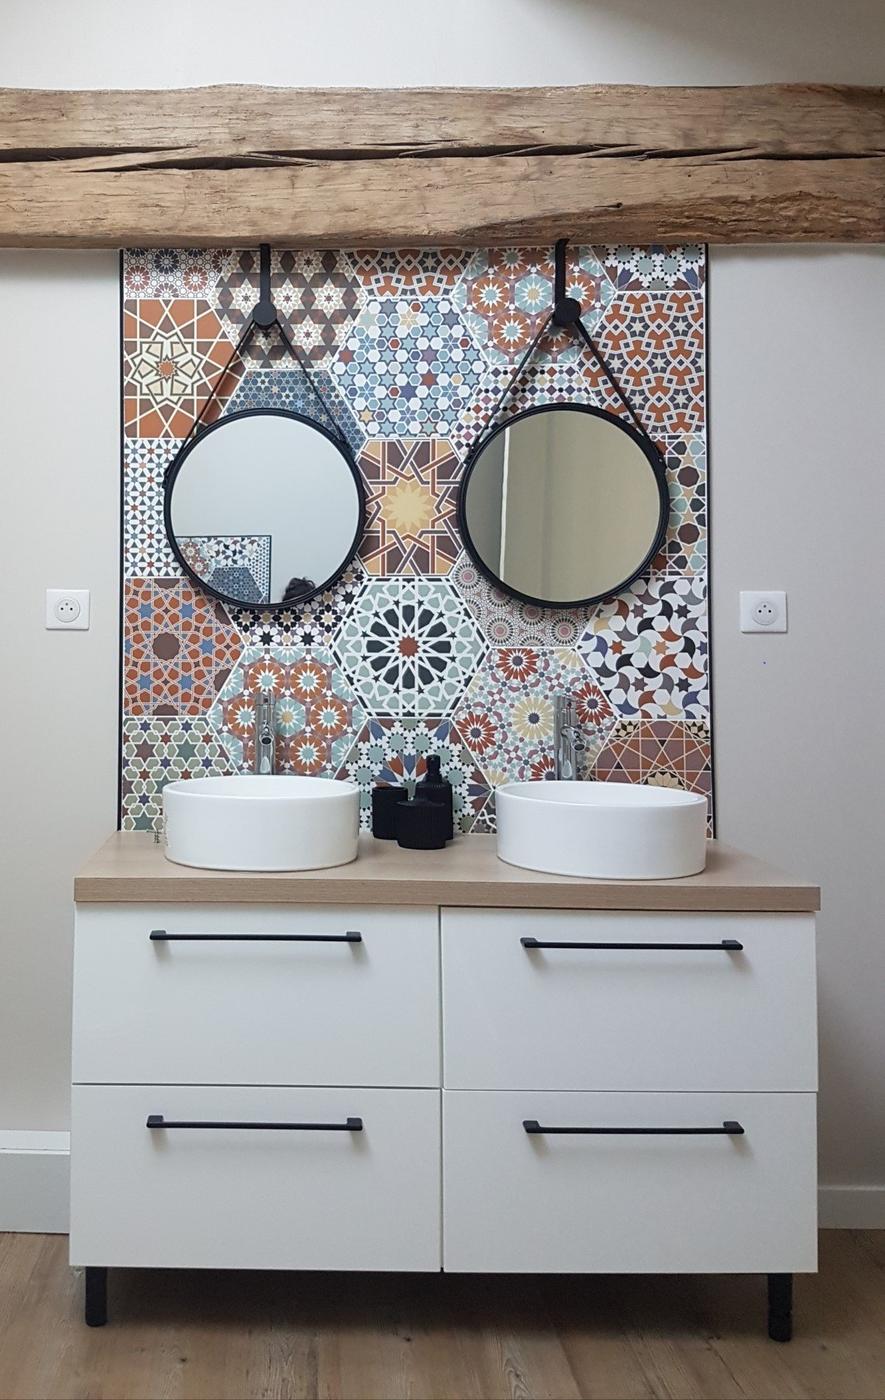 Carreau de ciment terracotta avec motifs géométriques 30x30 cm dans une salle de bain blanche avec meuble vasque en bois